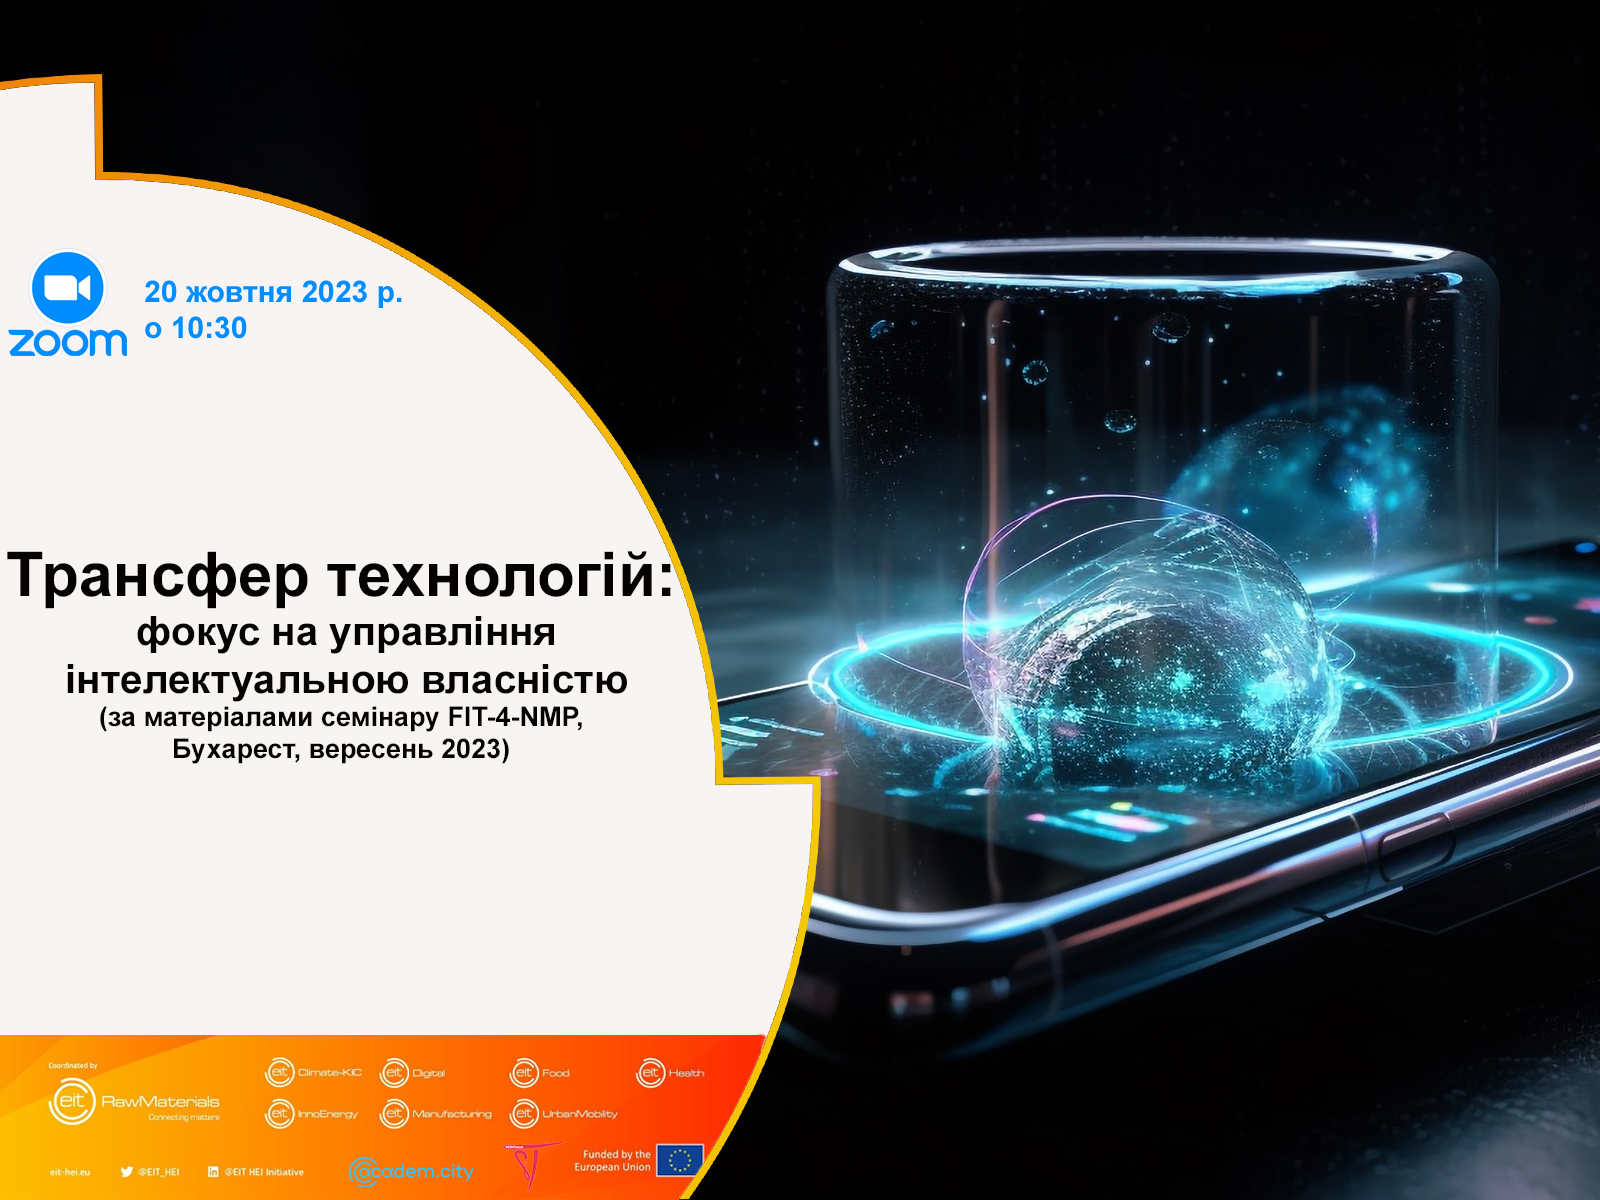 Трансфер технологій: фокус на управління інтелектуальною власністю  (за матеріалами семінару FIT-4-NMP, Бухарест, вересень 2023)